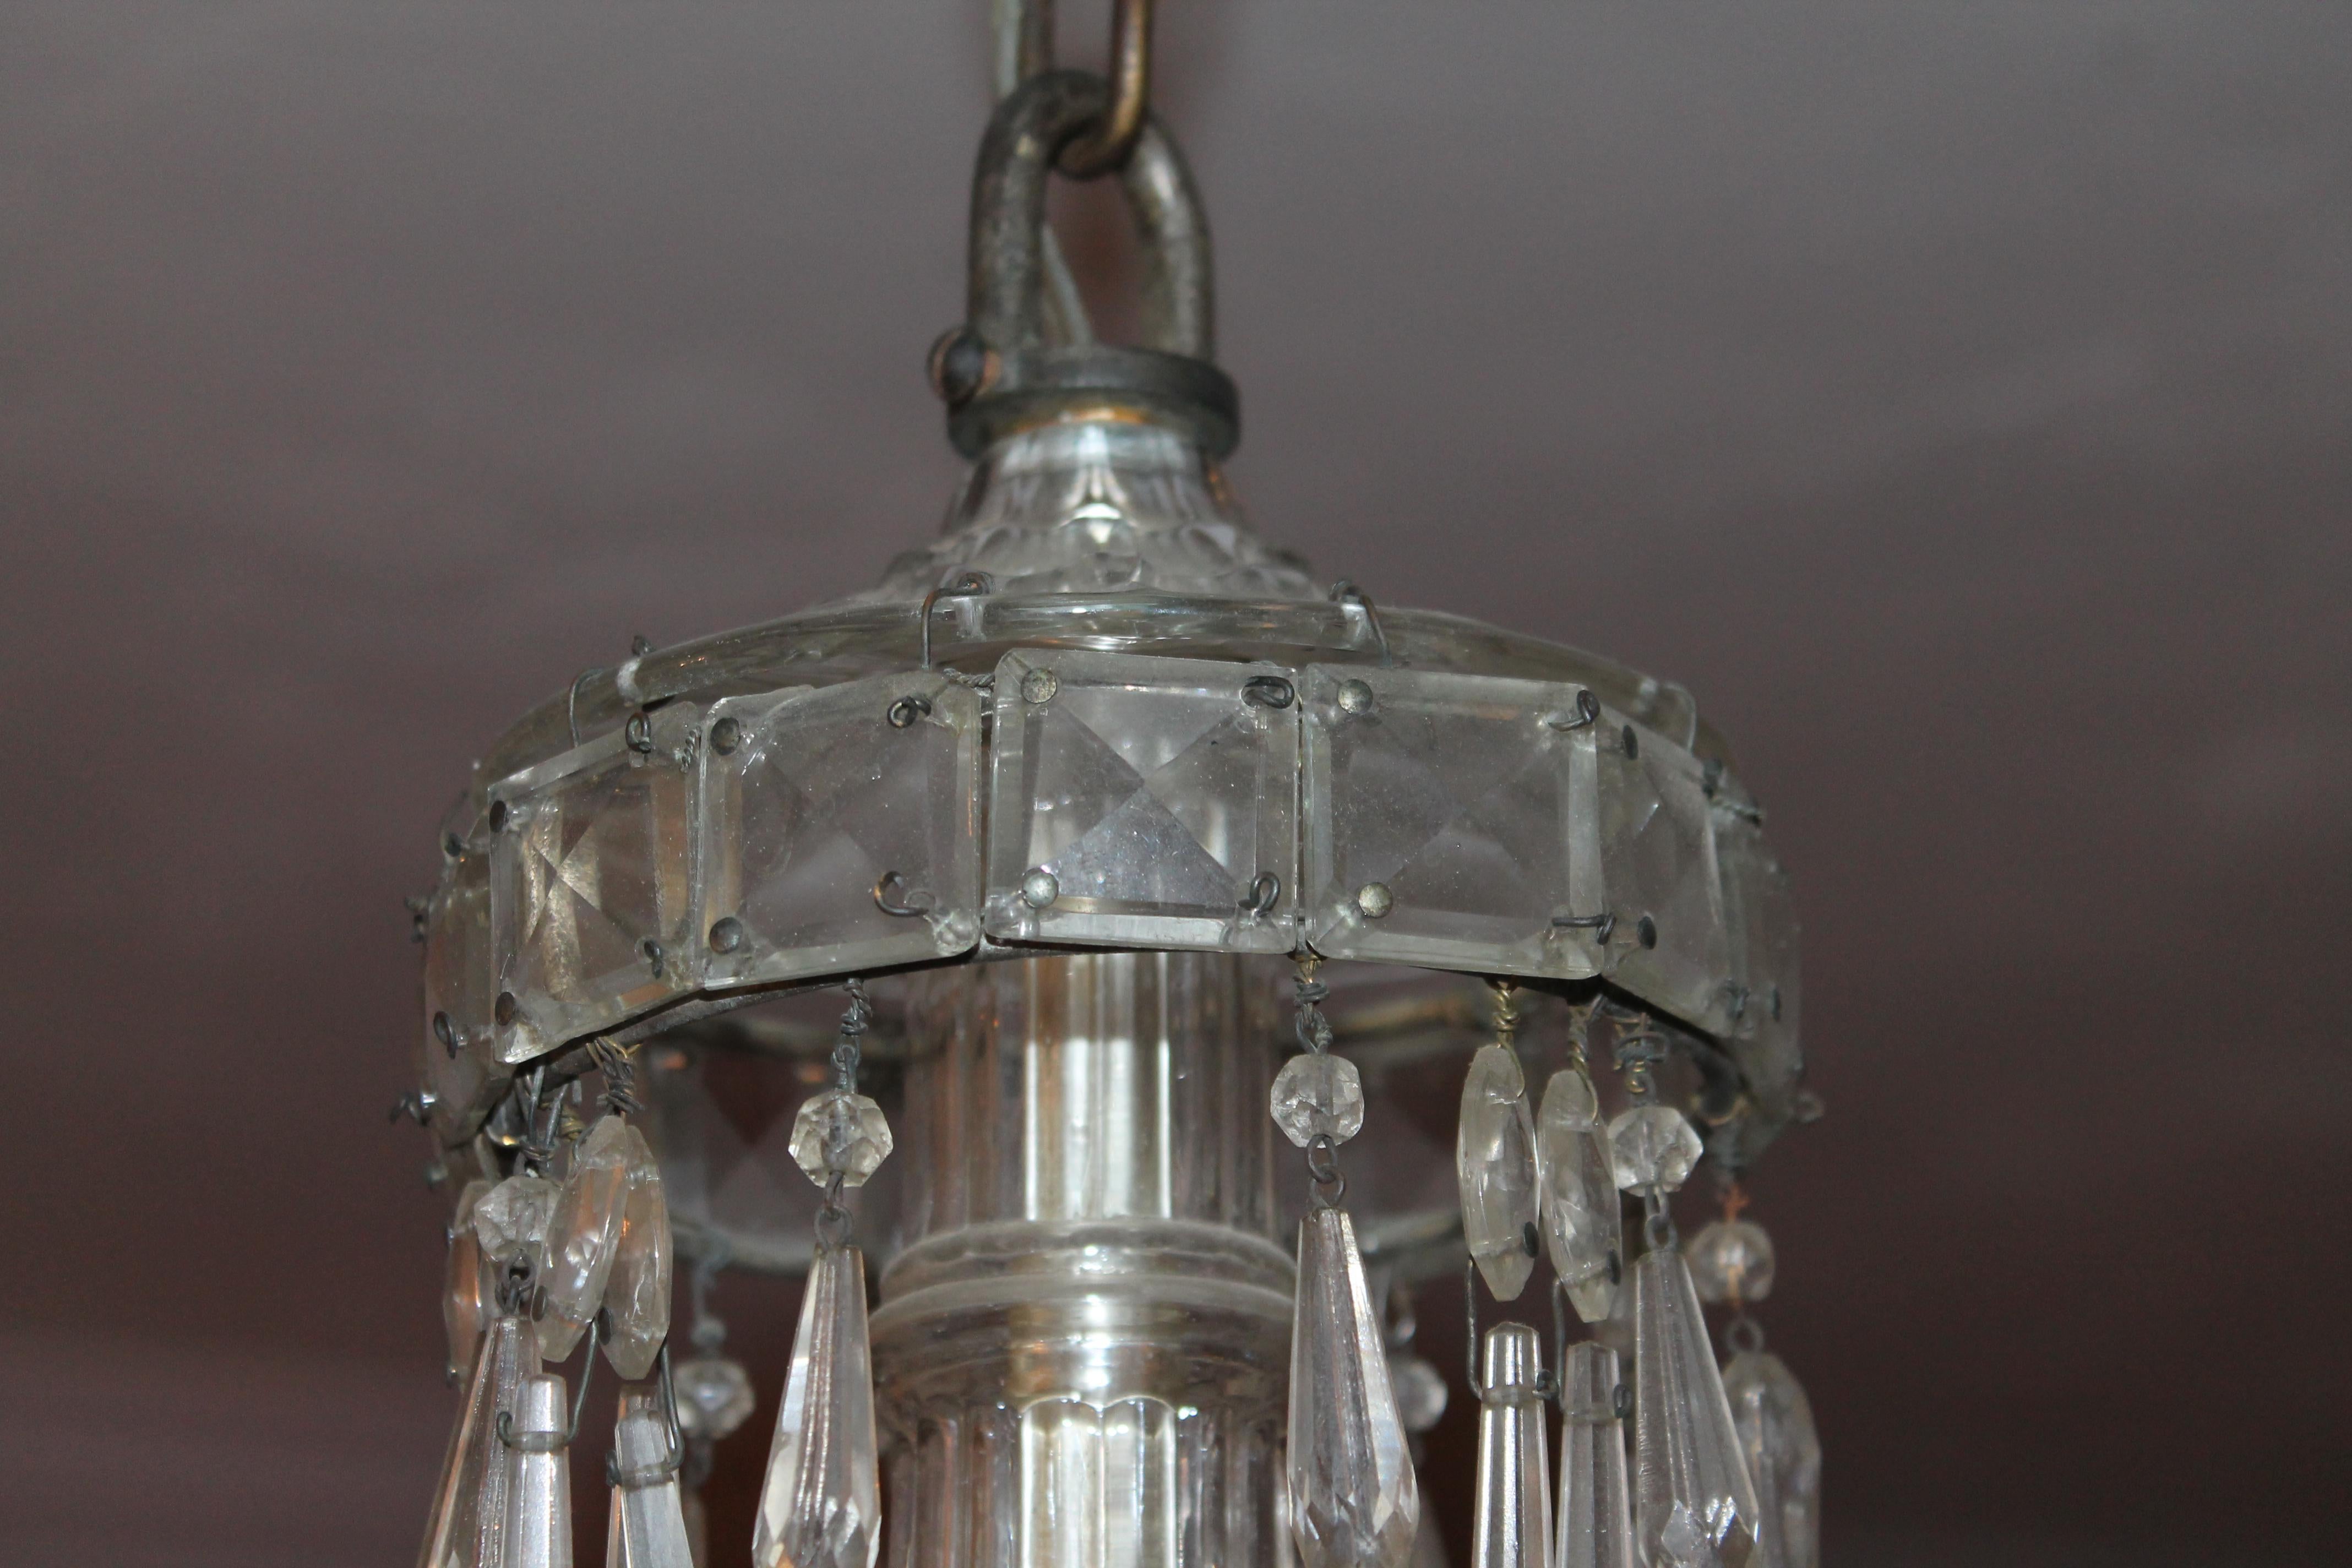 Magnifique lustre en cristal taillé néoclassique français de 1910, signé par la Maison Bagues. Superbe cadre hexagonal en acier. Très détaillé, il rappelle un lustre russe.